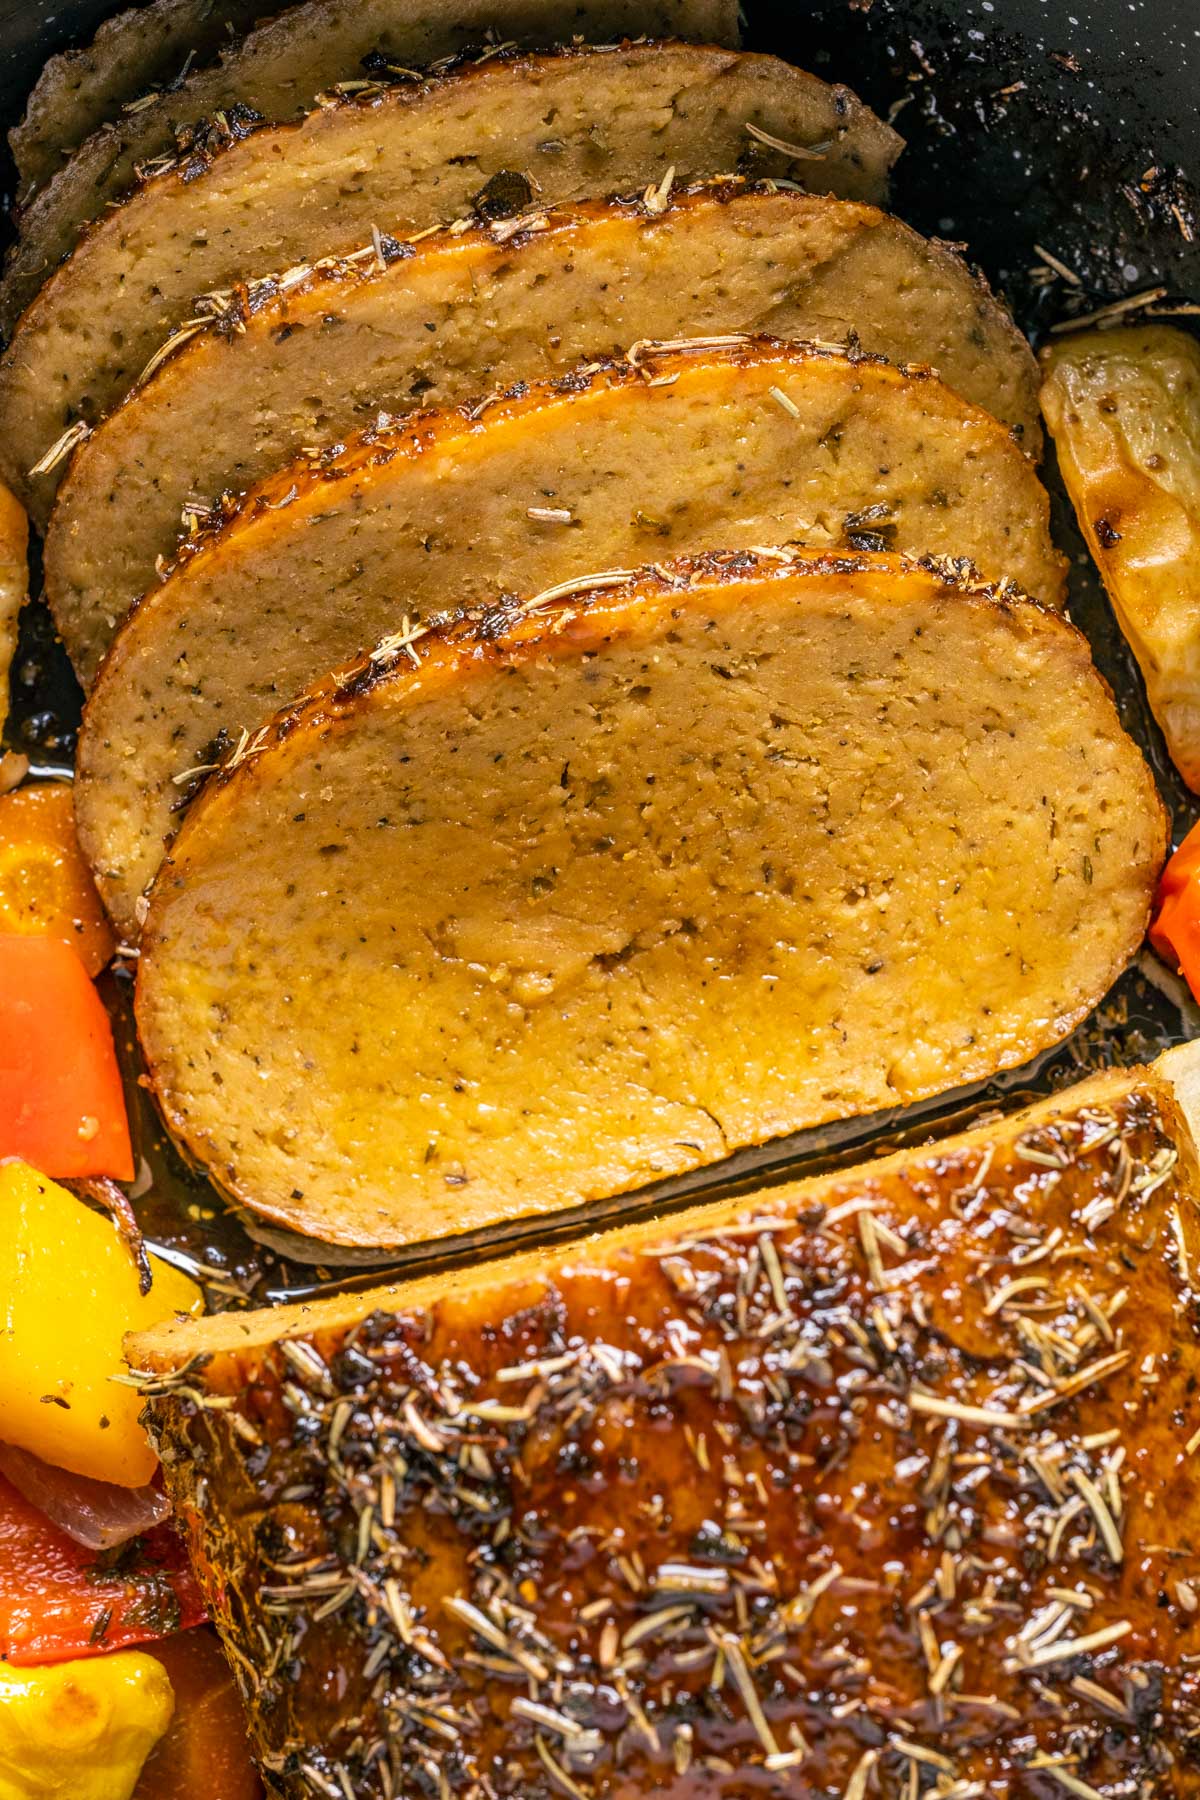 Sliced vegan turkey roast in a roasting pan with vegetables.